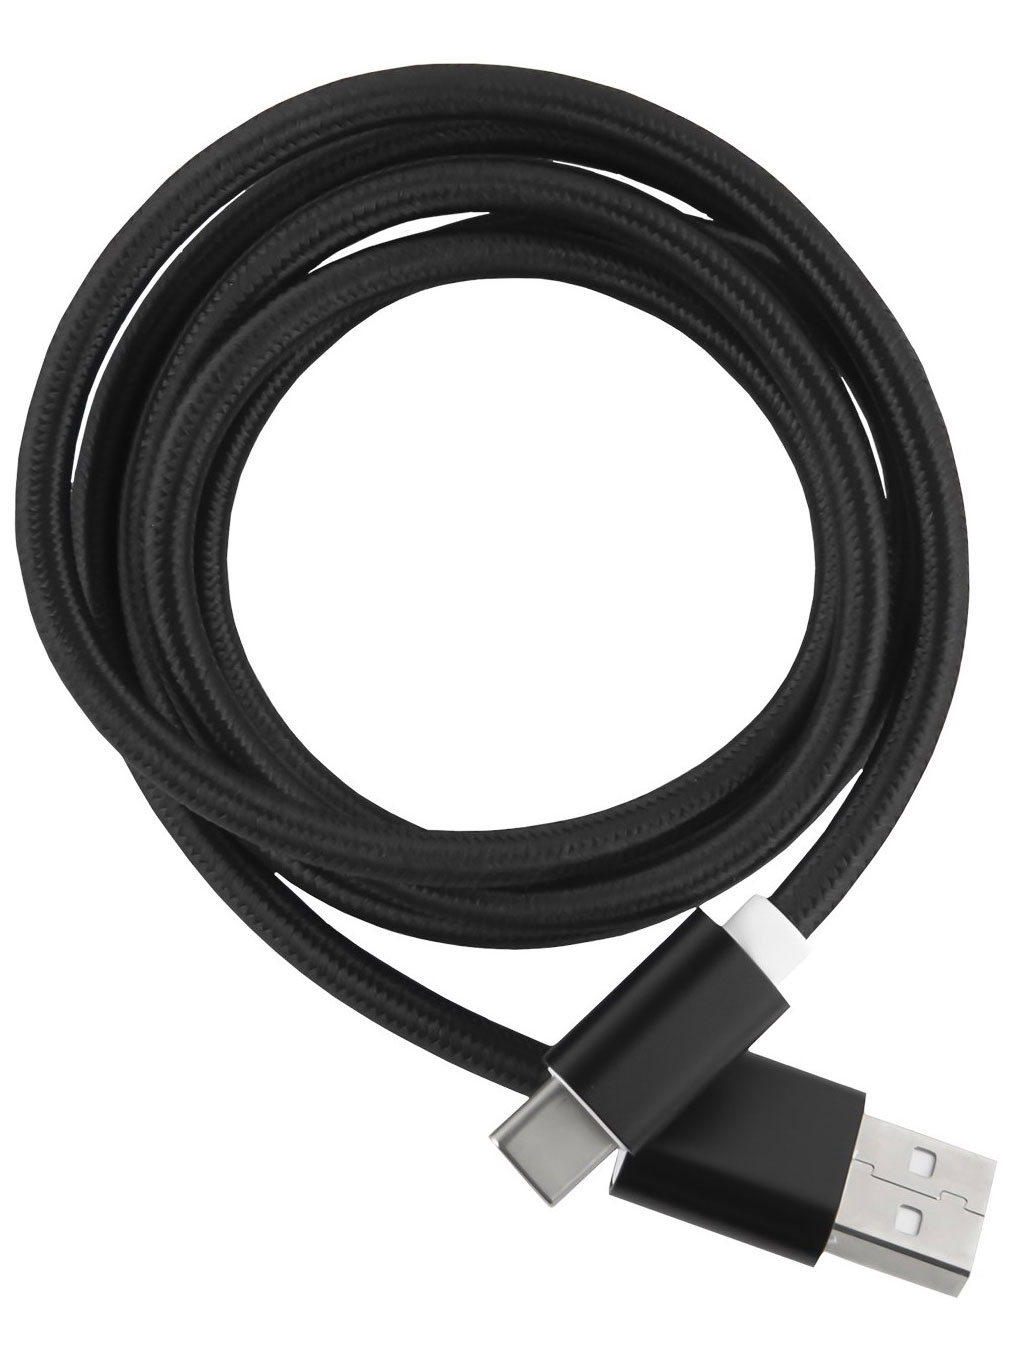 Кабель Red Line USB-Type-C 2.0 нейлоновая оплетка, черный дата кабель hoco u82 pisces usb type c 1 2 м красный